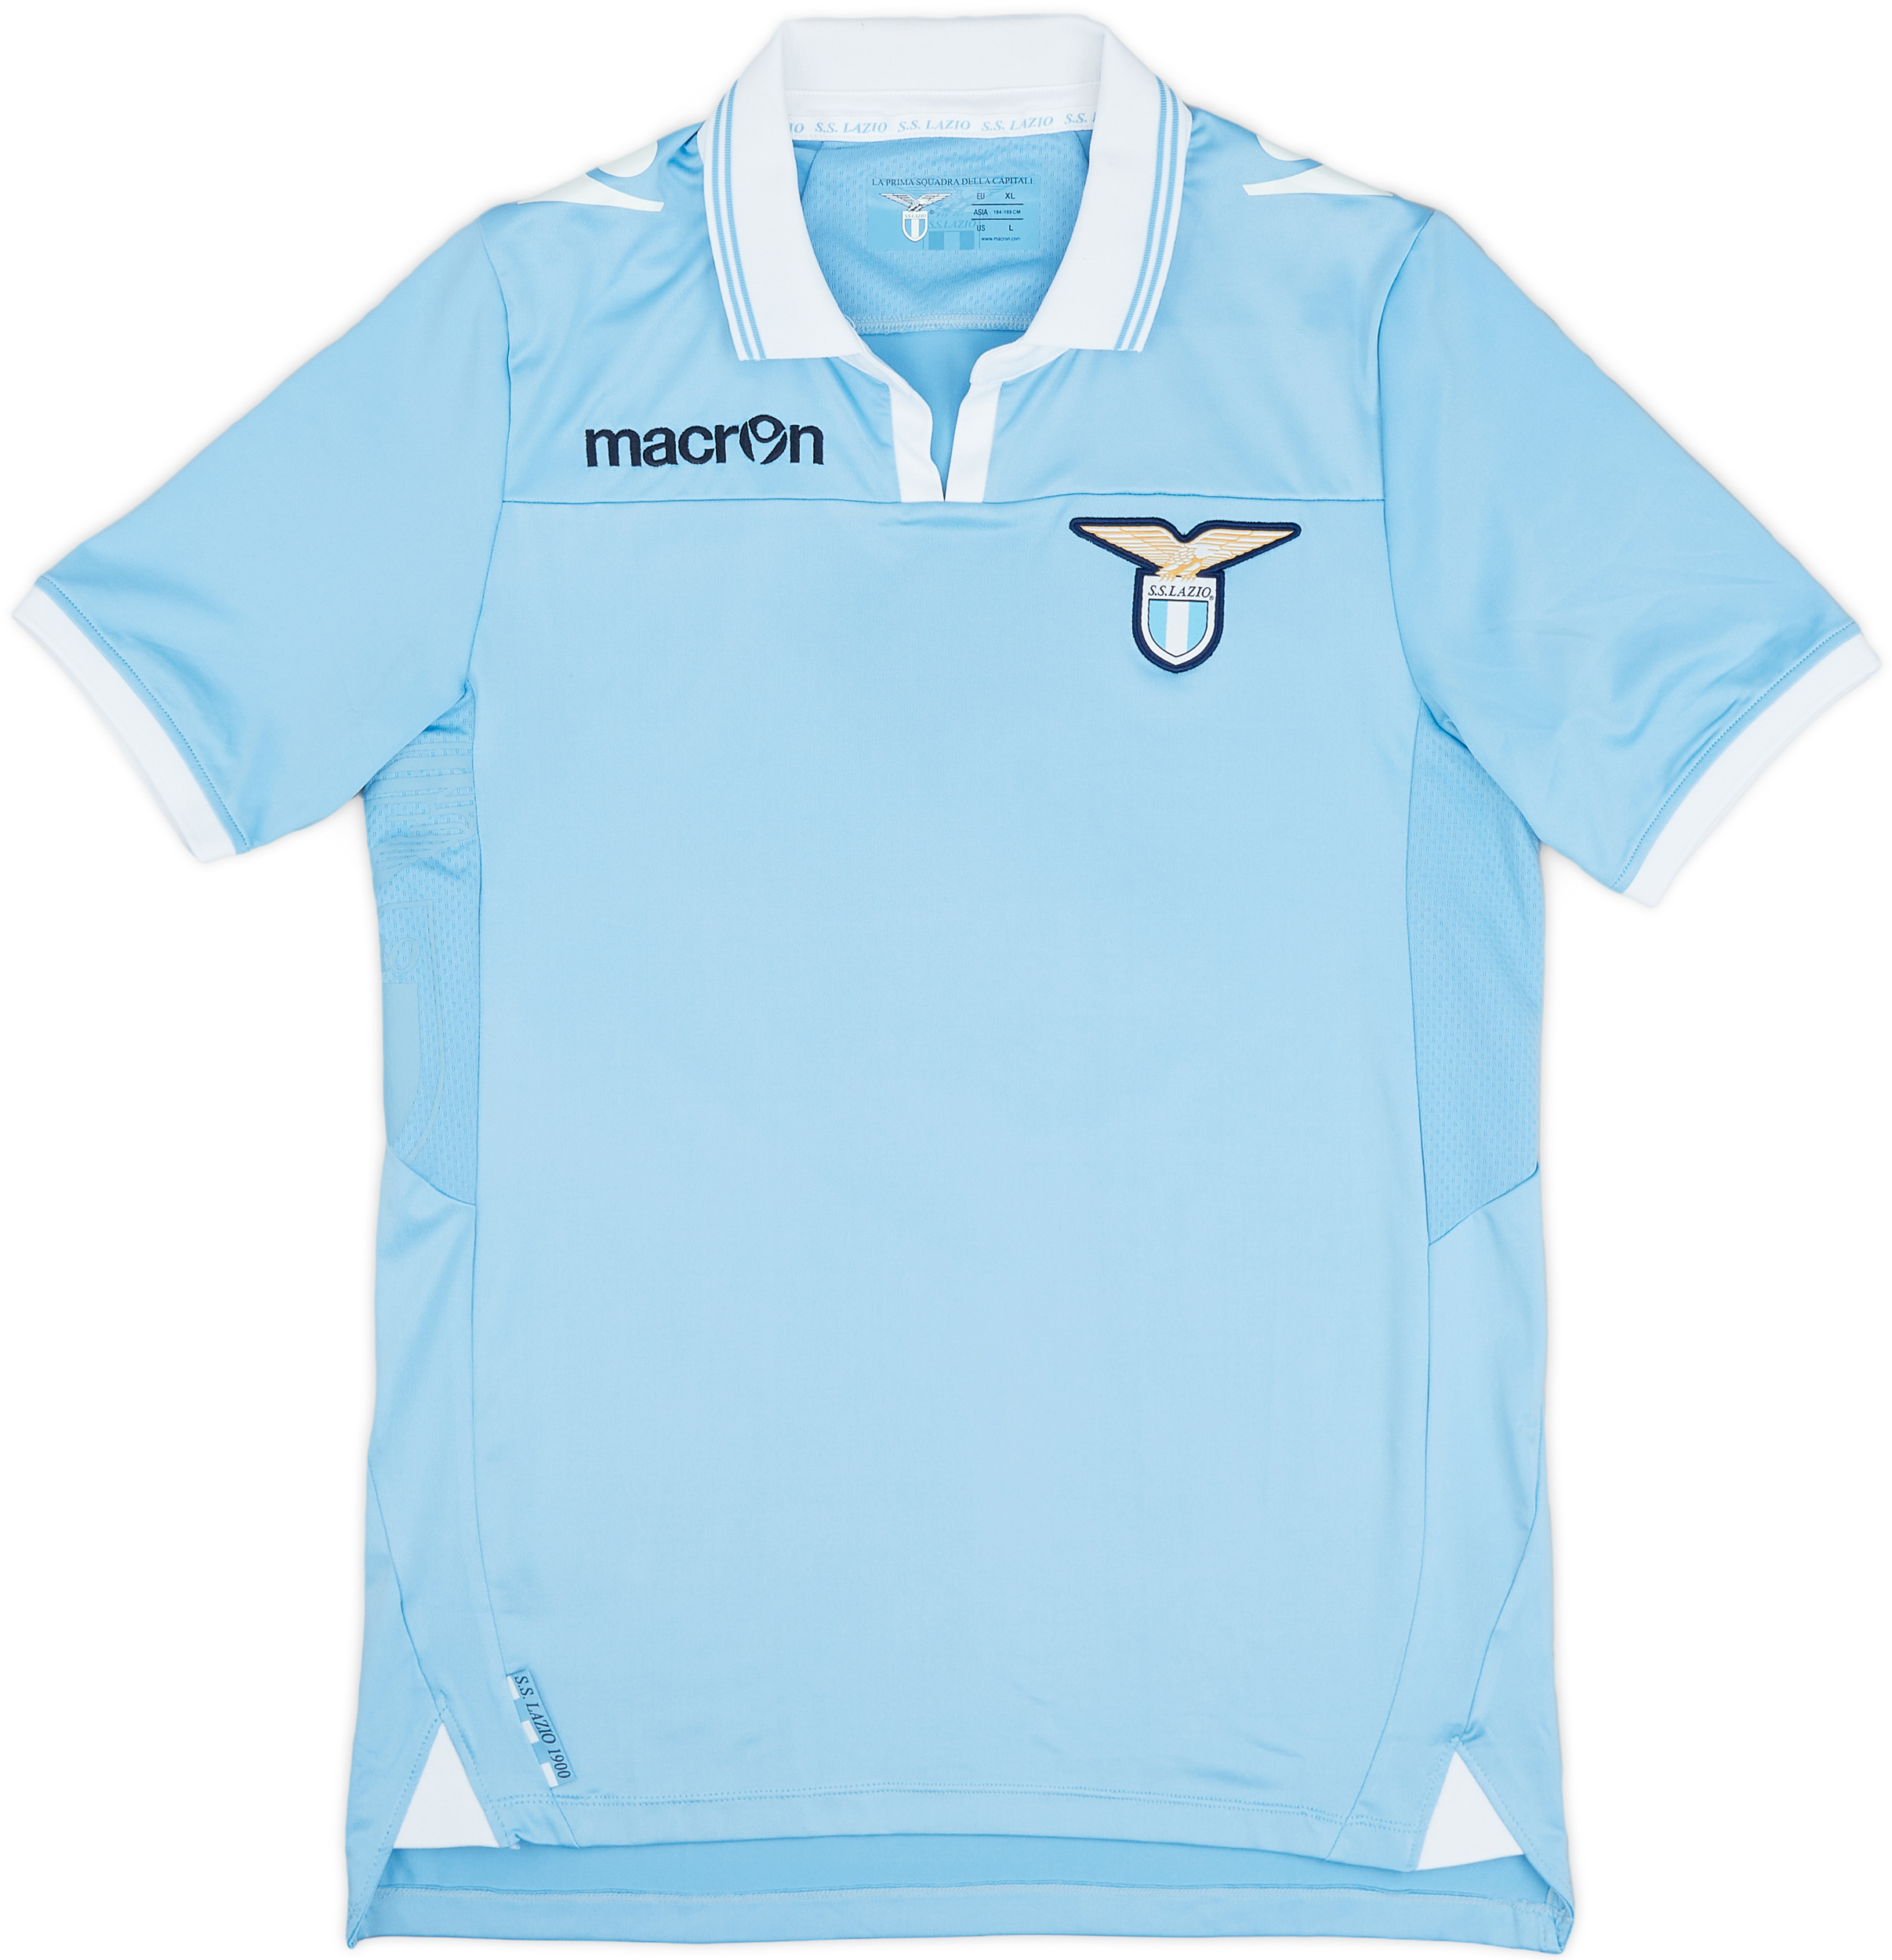 2012-13 Lazio Home Shirt - 9/10 - ()